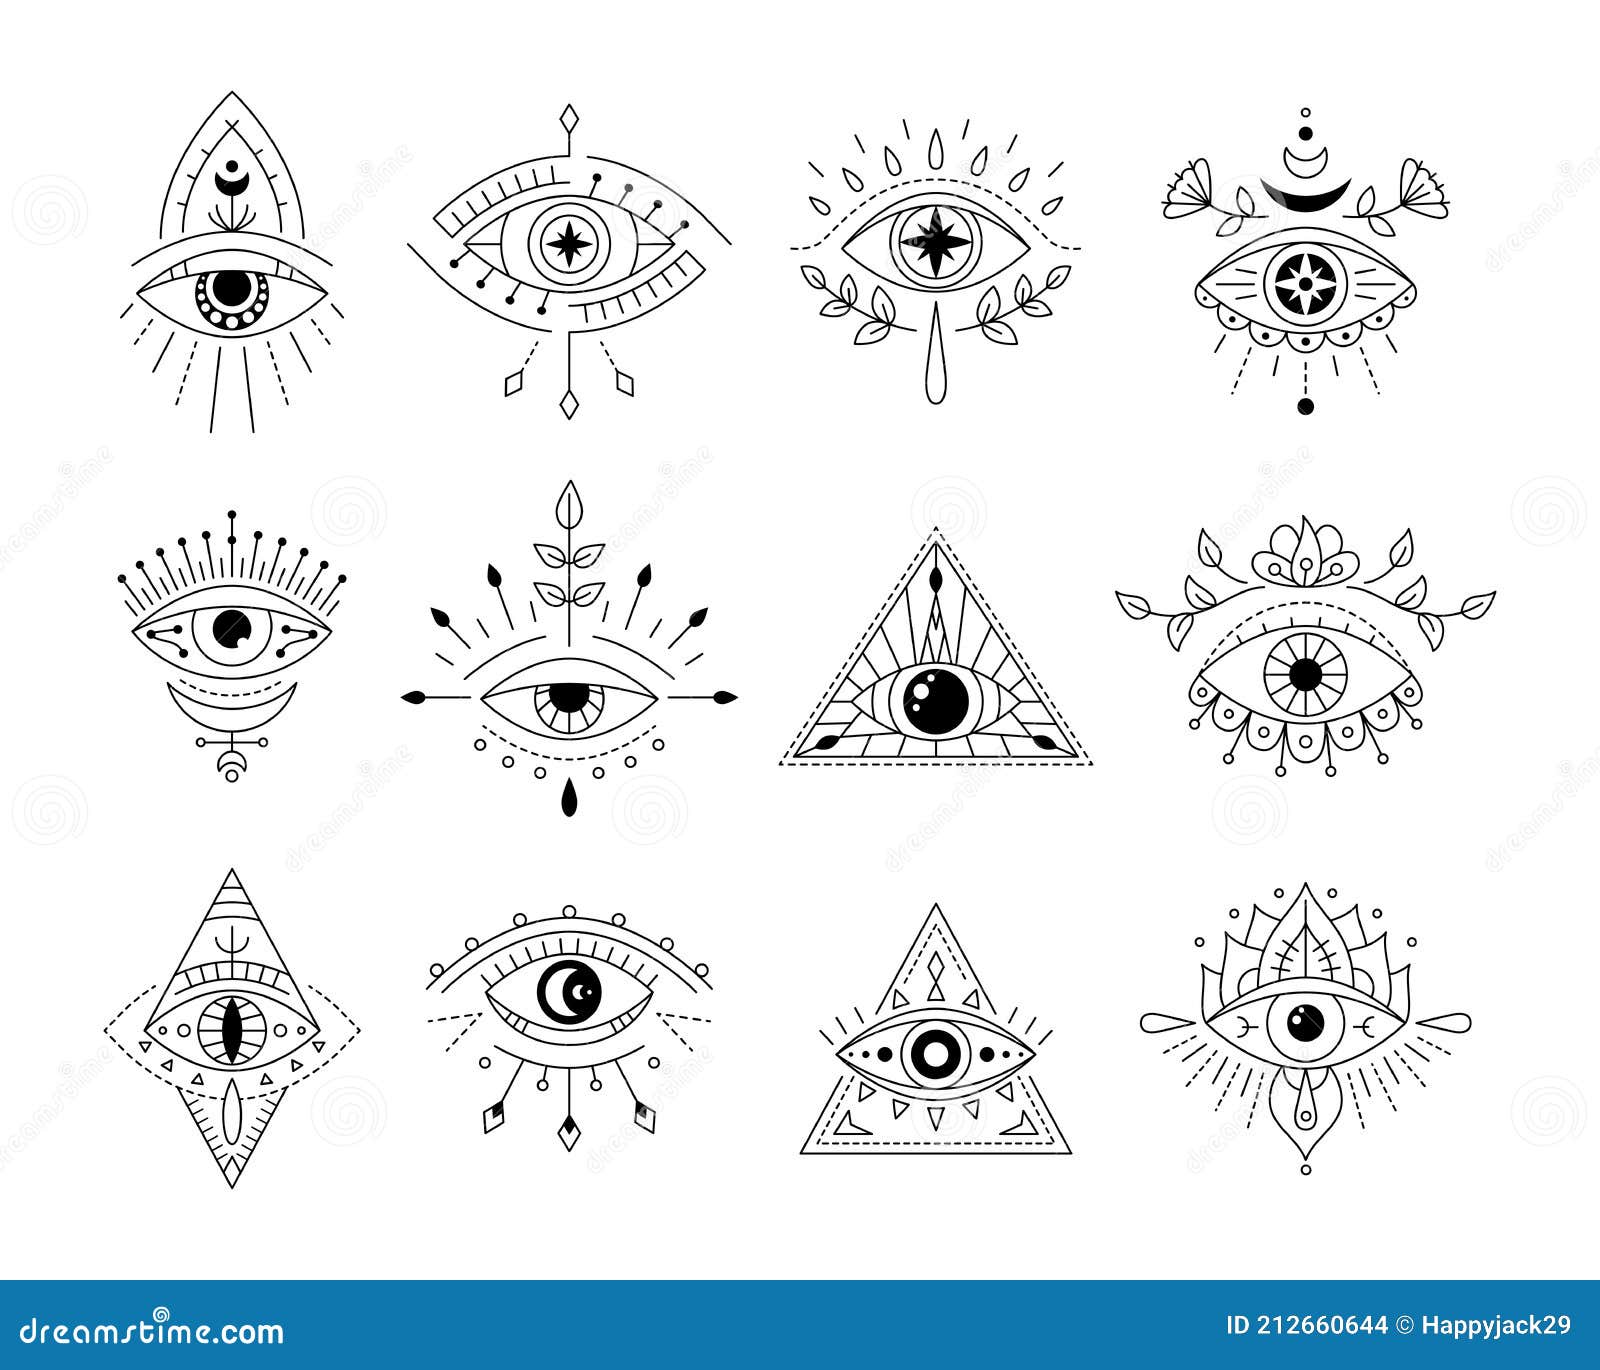 293 Evil Eye Tattoo Designs Illustrations  Clip Art  iStock